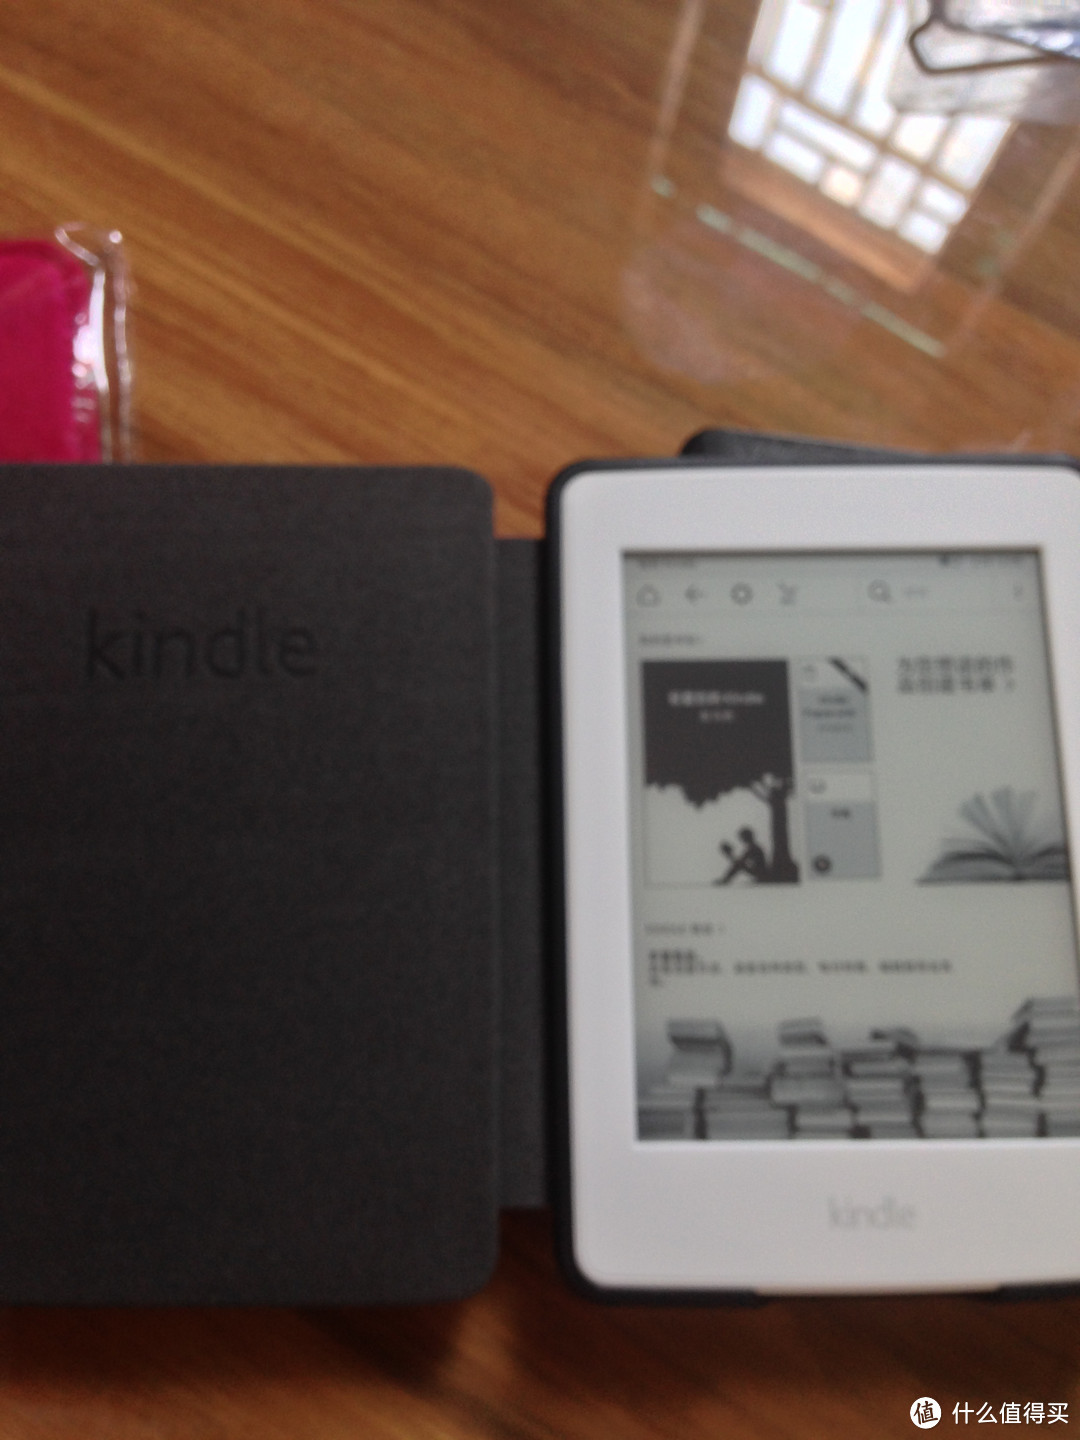 入手！Amazon亚马逊国行Kindle Paperwhite 3 阅读器（白色）